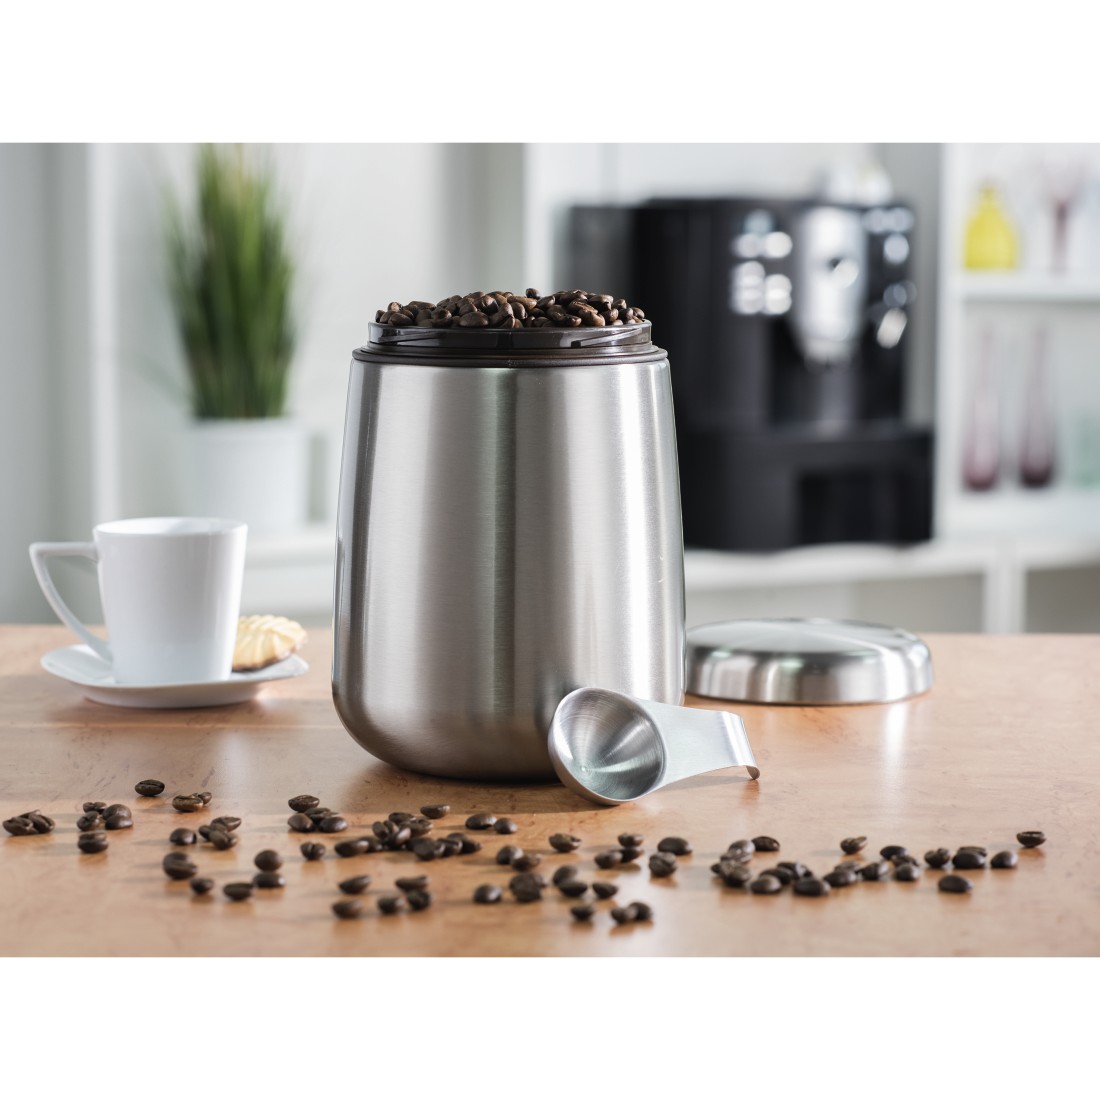 awx5 Druckfähige Anwendung 5 - Xavax, Edelstahldose für 500 g Kaffeebohnen, Silber